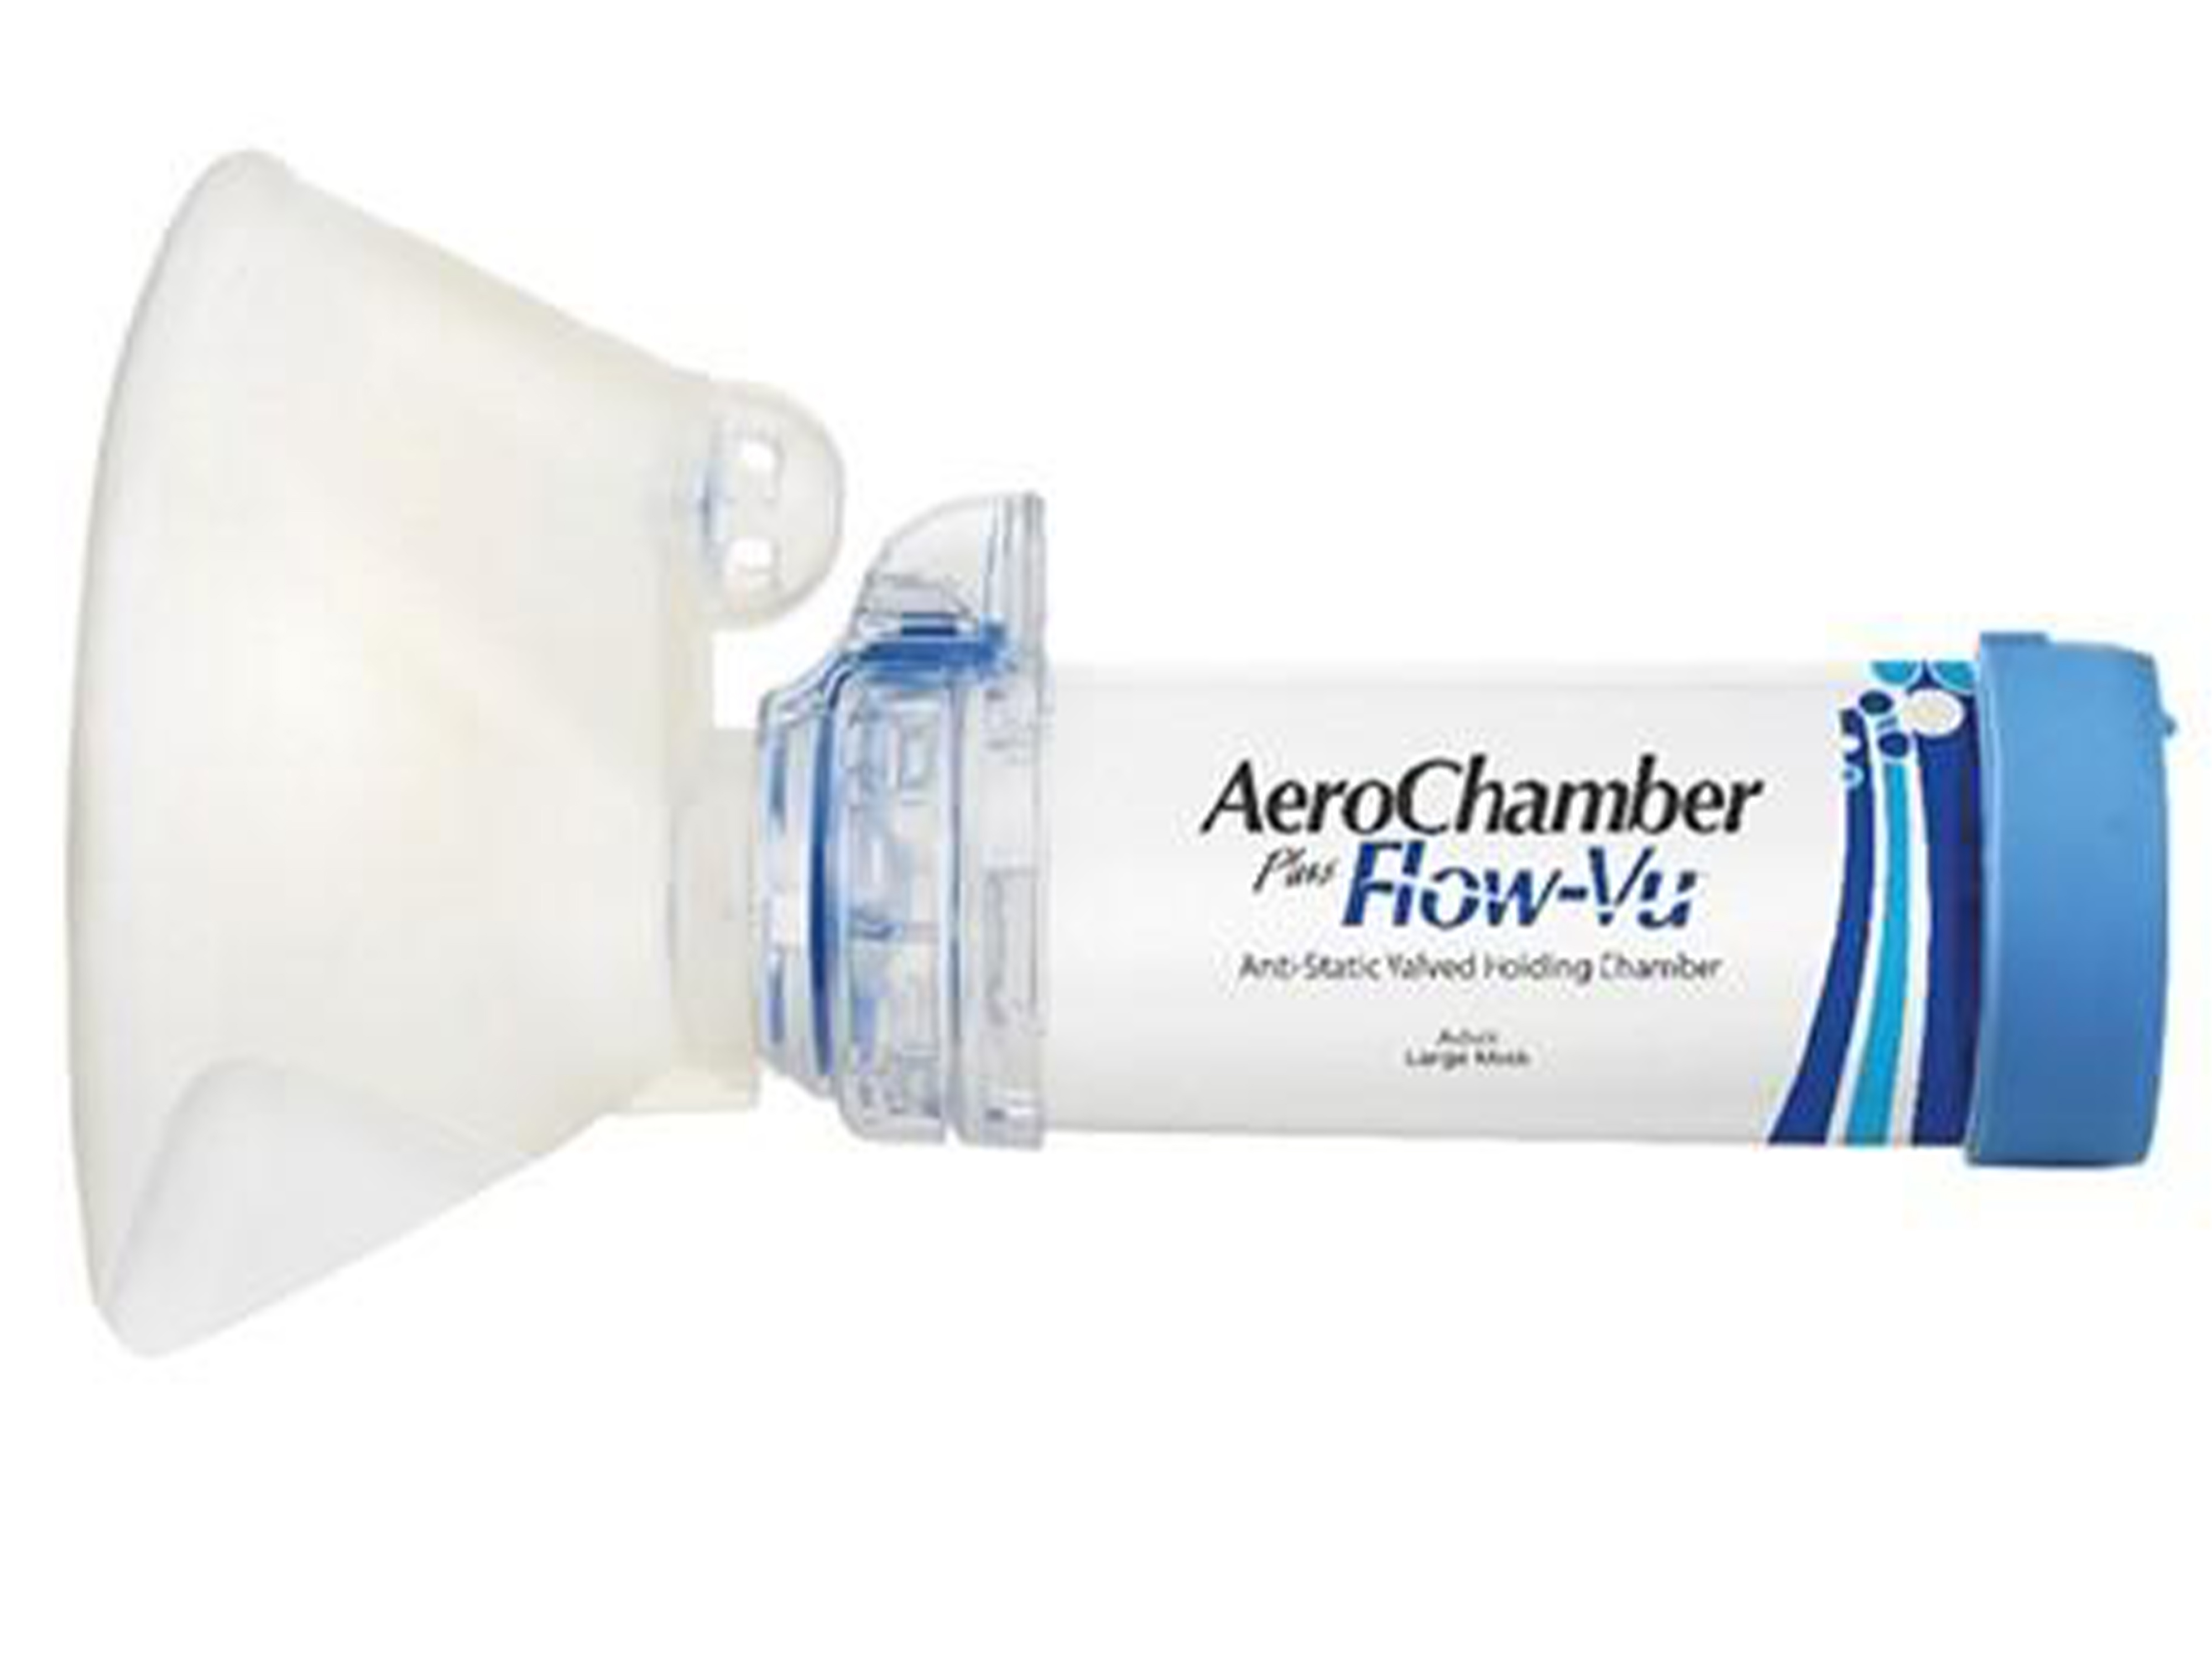 Aerochamber PlusFlow-Vu maske, Inhalasjonskammer med stor maske, Til voksne, 1 stk.